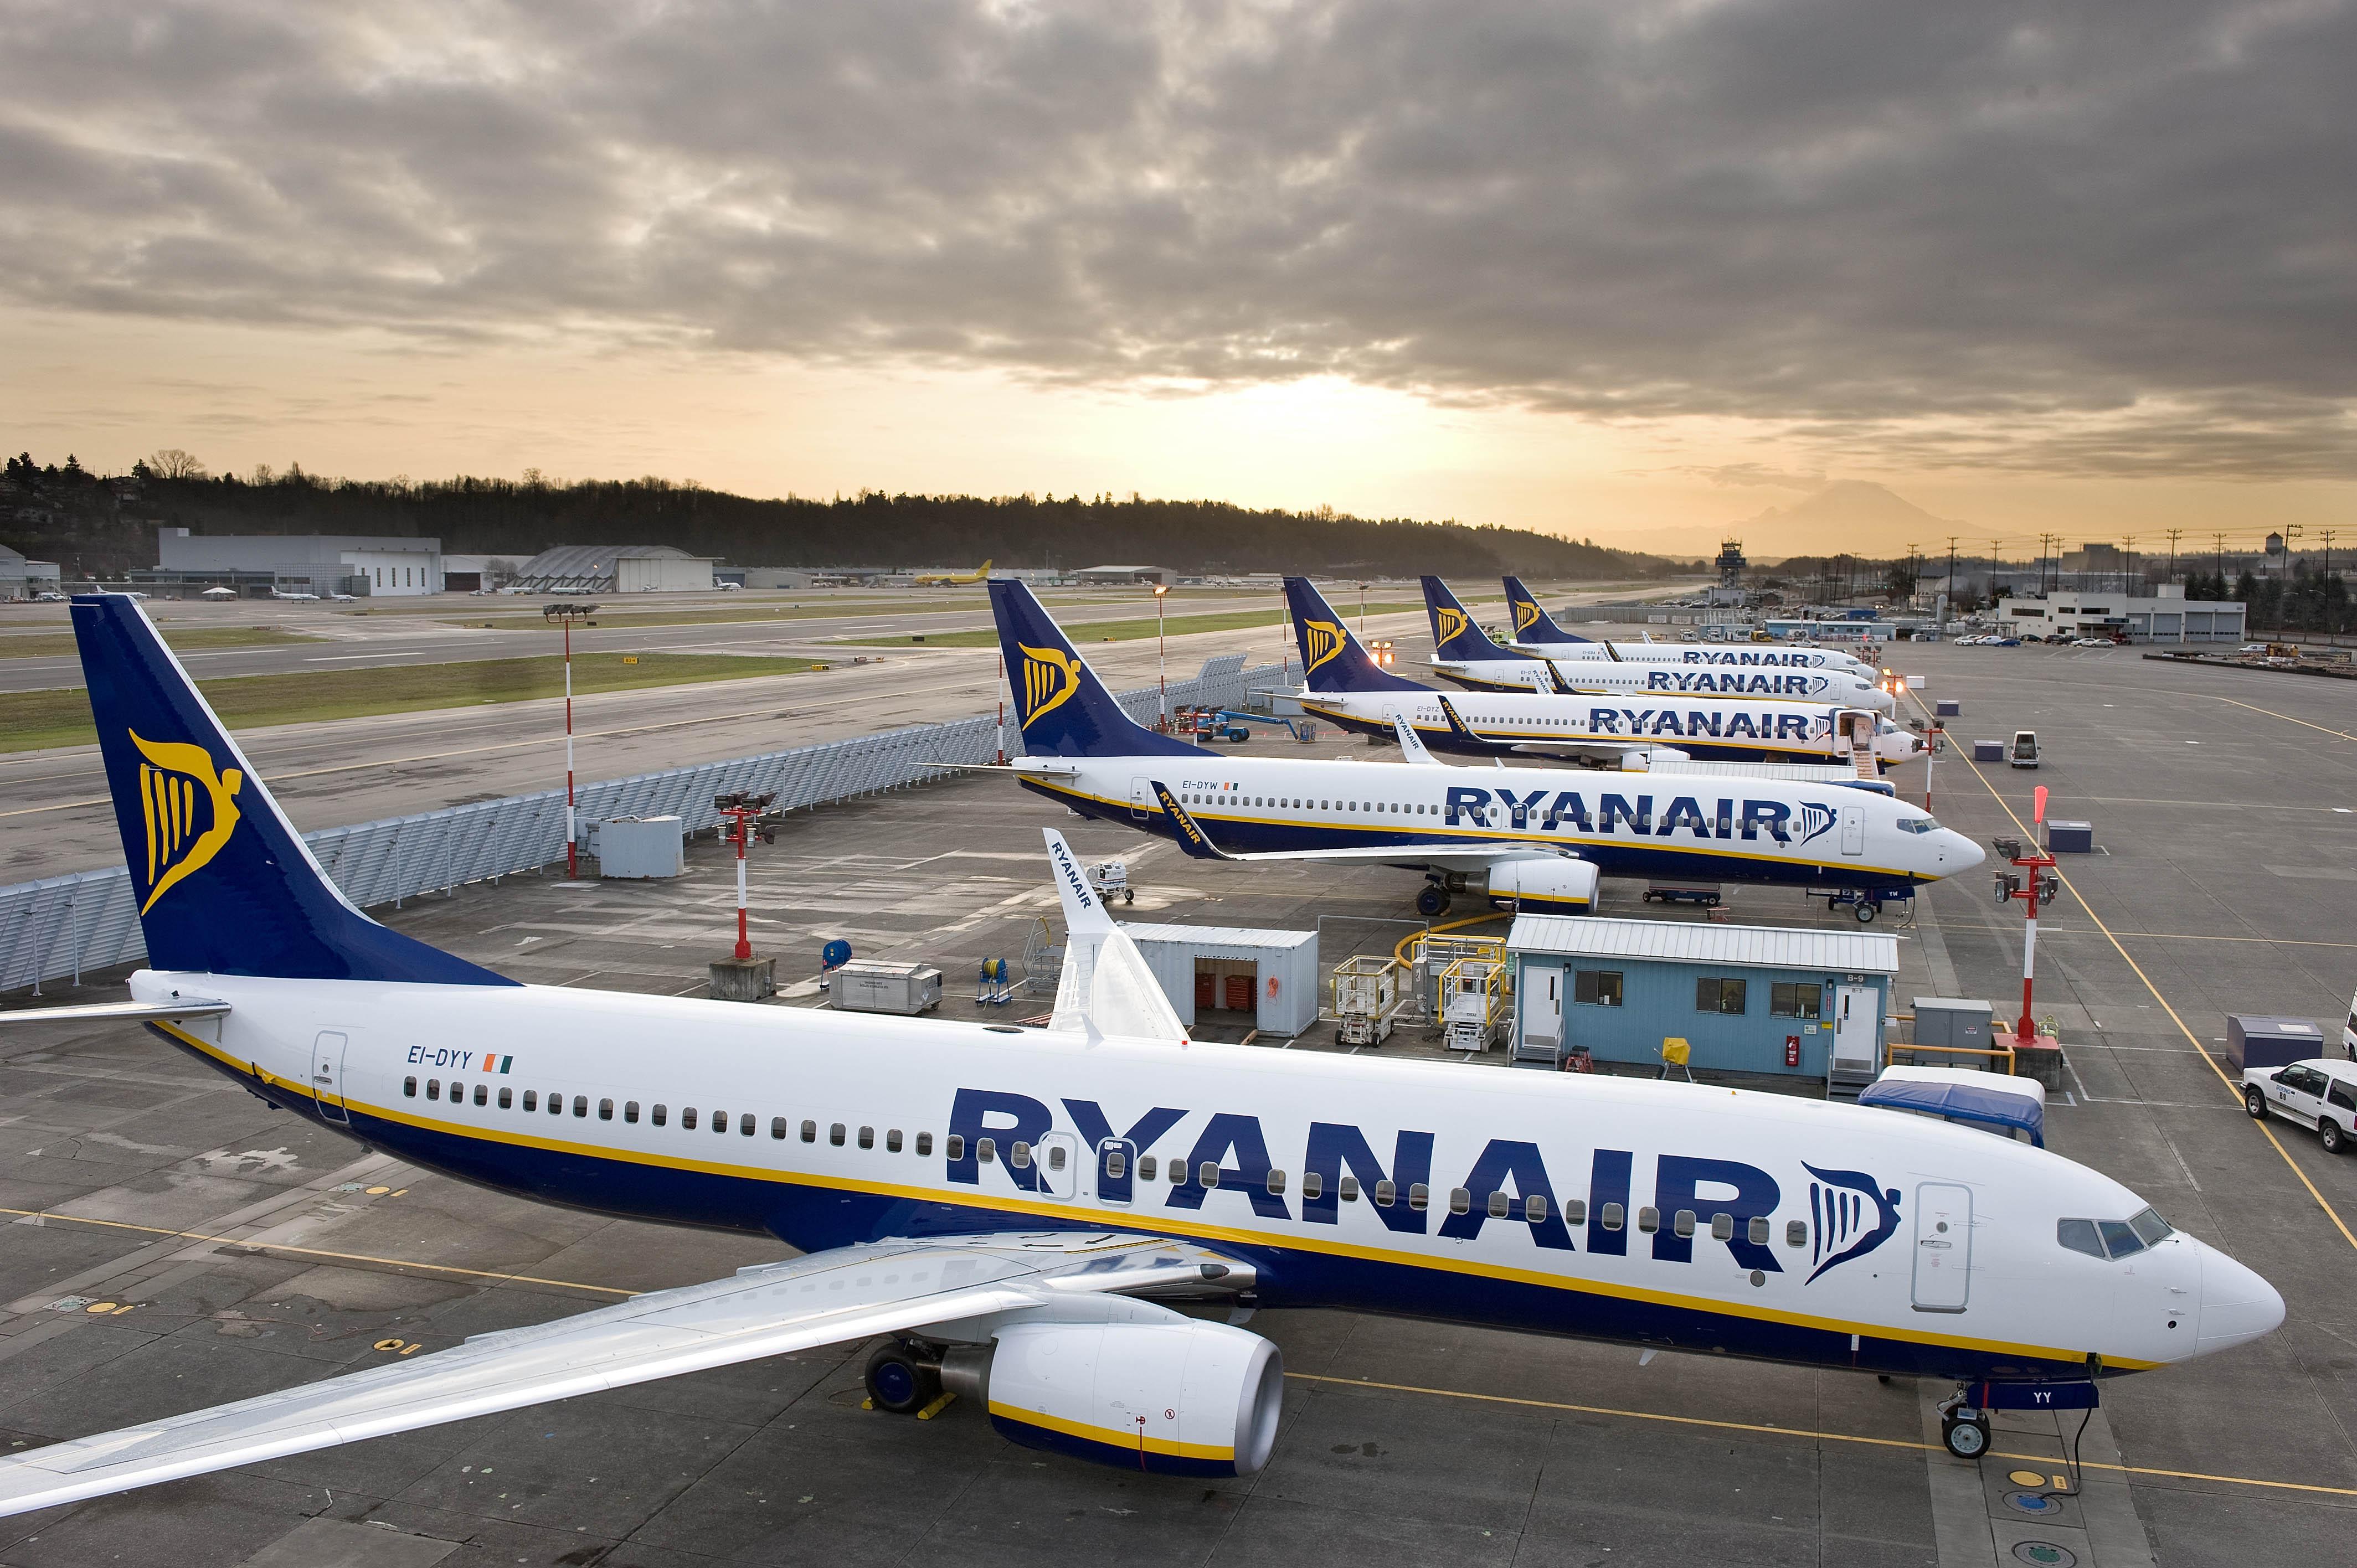 Πορτογαλία: Ξεκίνησε η απεργία του προσωπικού καμπίνας της Ryanair